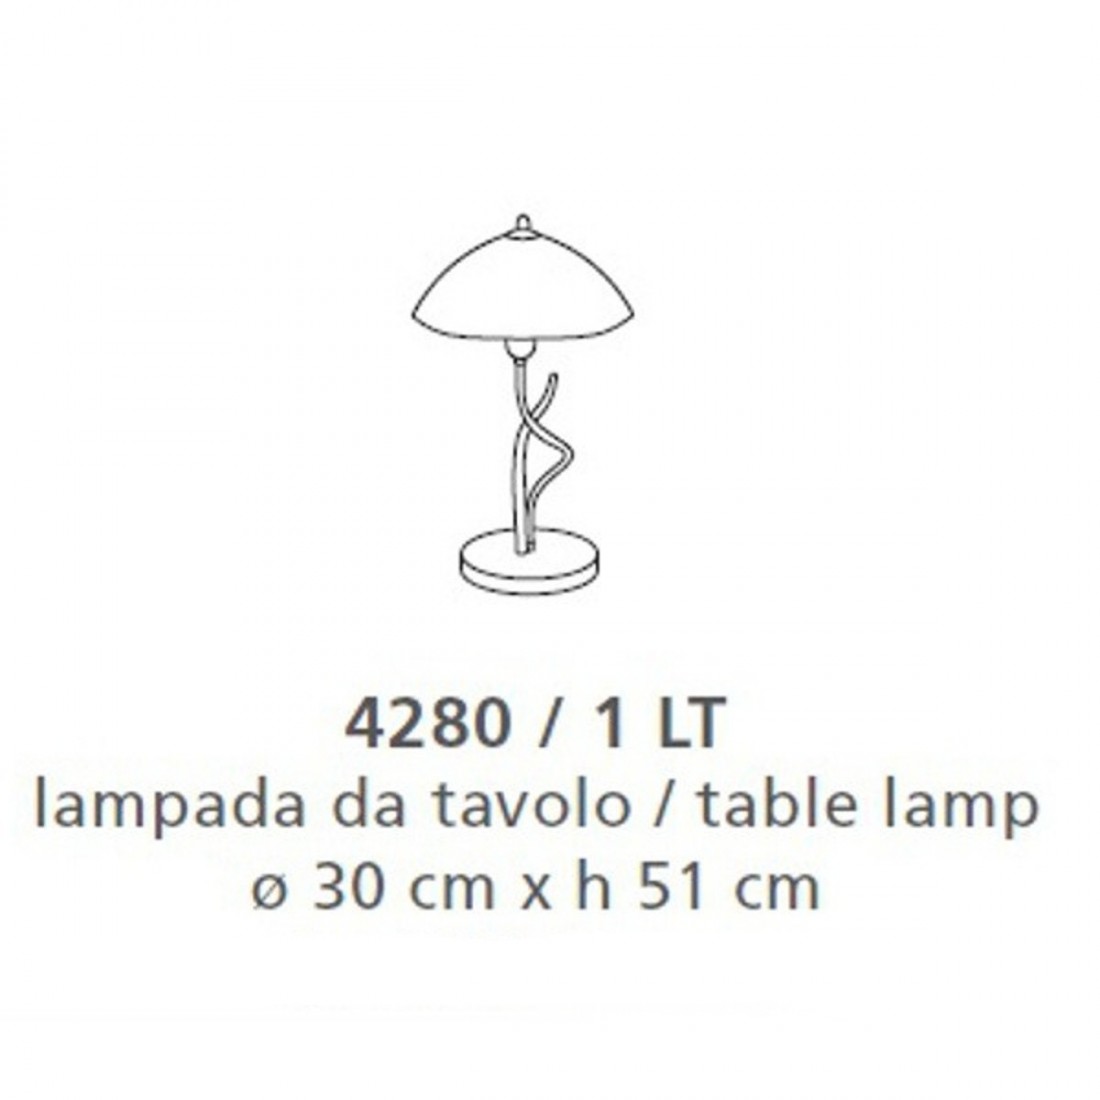 Lampe de table classique avec douille LED E27, IP20.